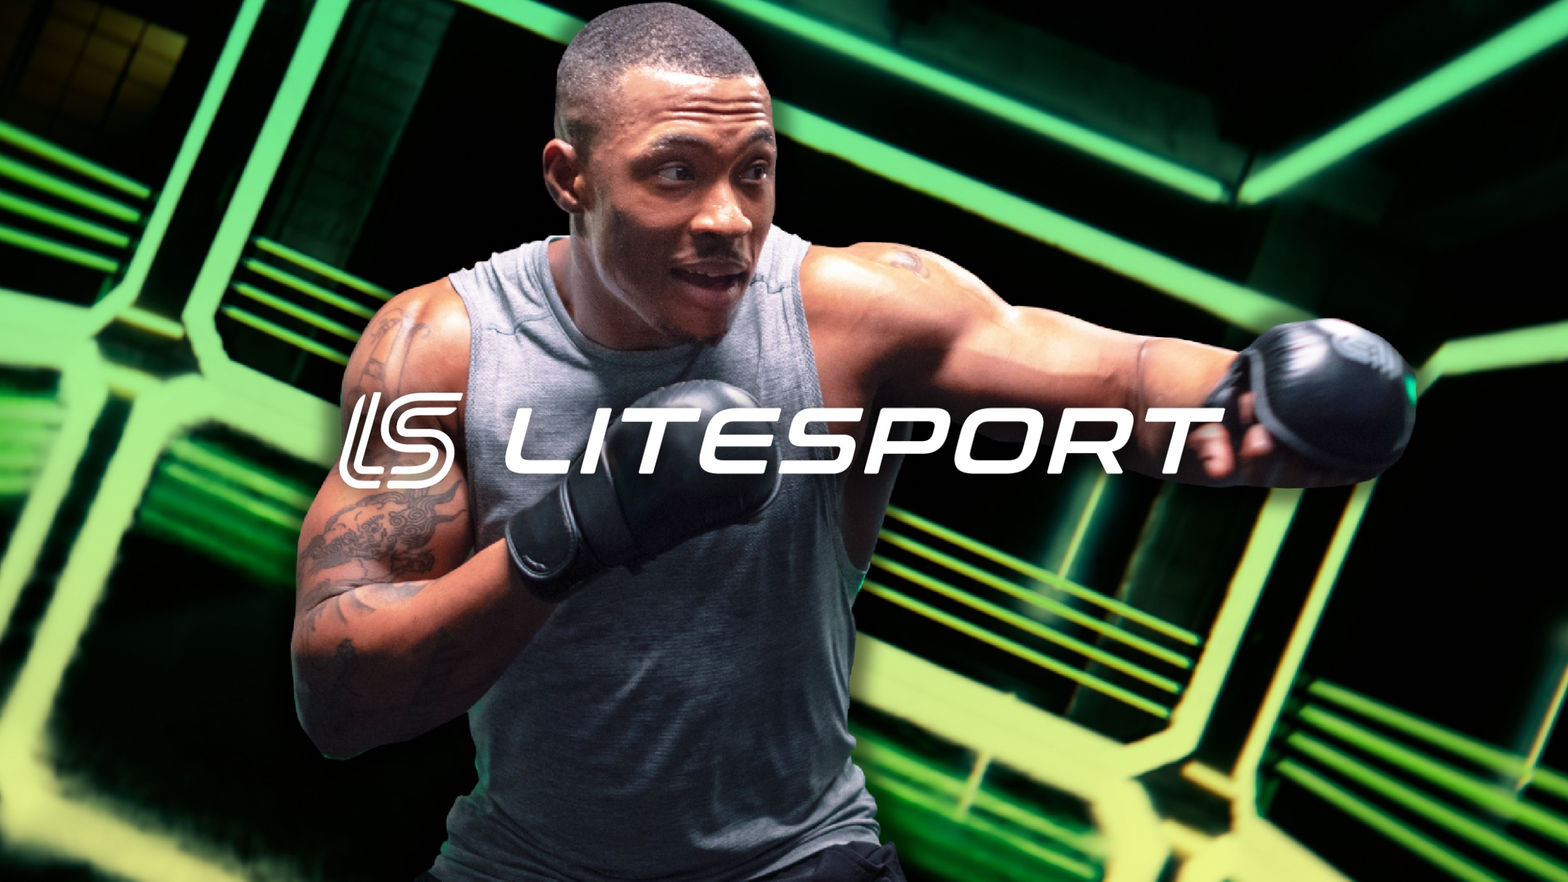 Litesport: Join the Fitness Revolution